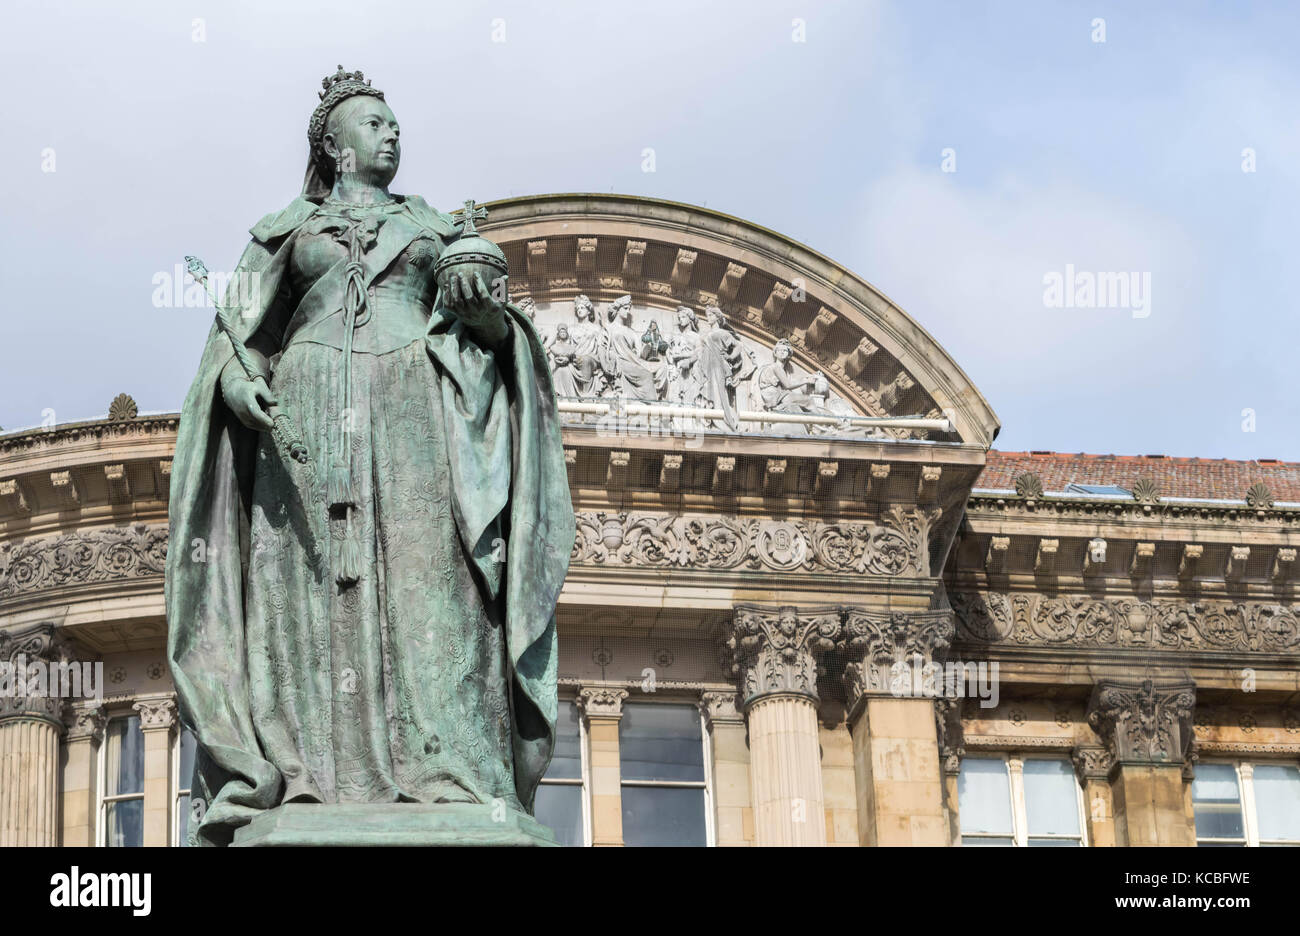 Birmingham, Großbritannien, Oktober 3rd, 2017: Statue von Queen Victoria in Birmingham, UK, Birmingham City Council im Hintergrund Stockfoto